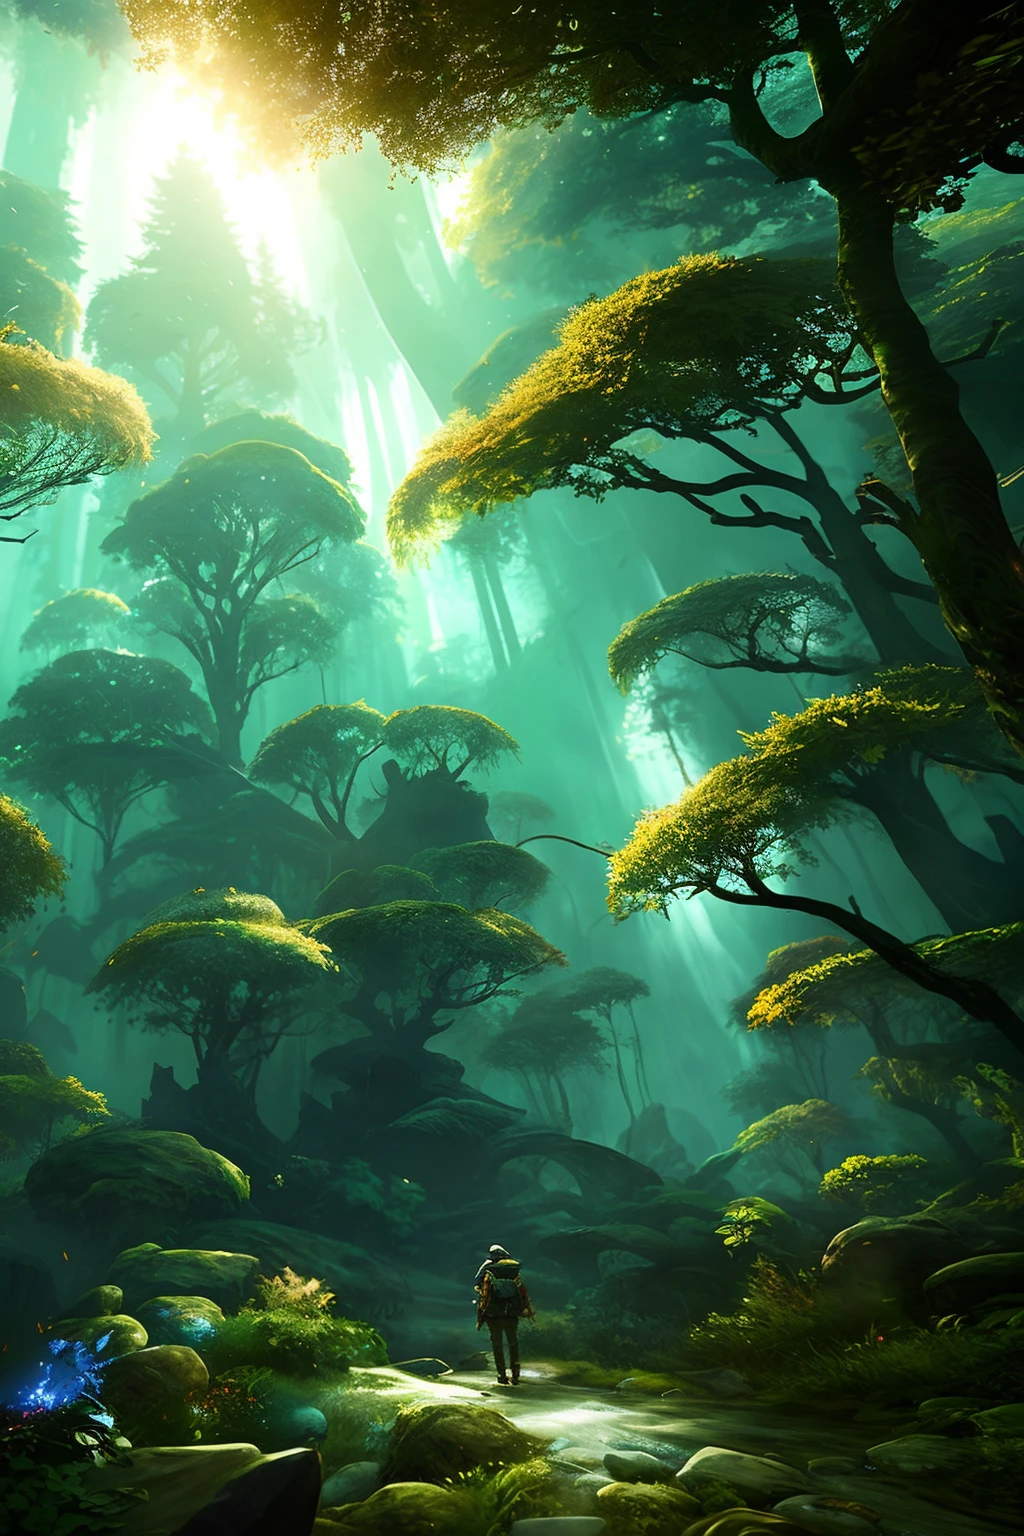 Explorador en un bosque profundo de crecimiento anciano intrincadamente detallado iluminación volumétrica natural atmósfera de fantasía